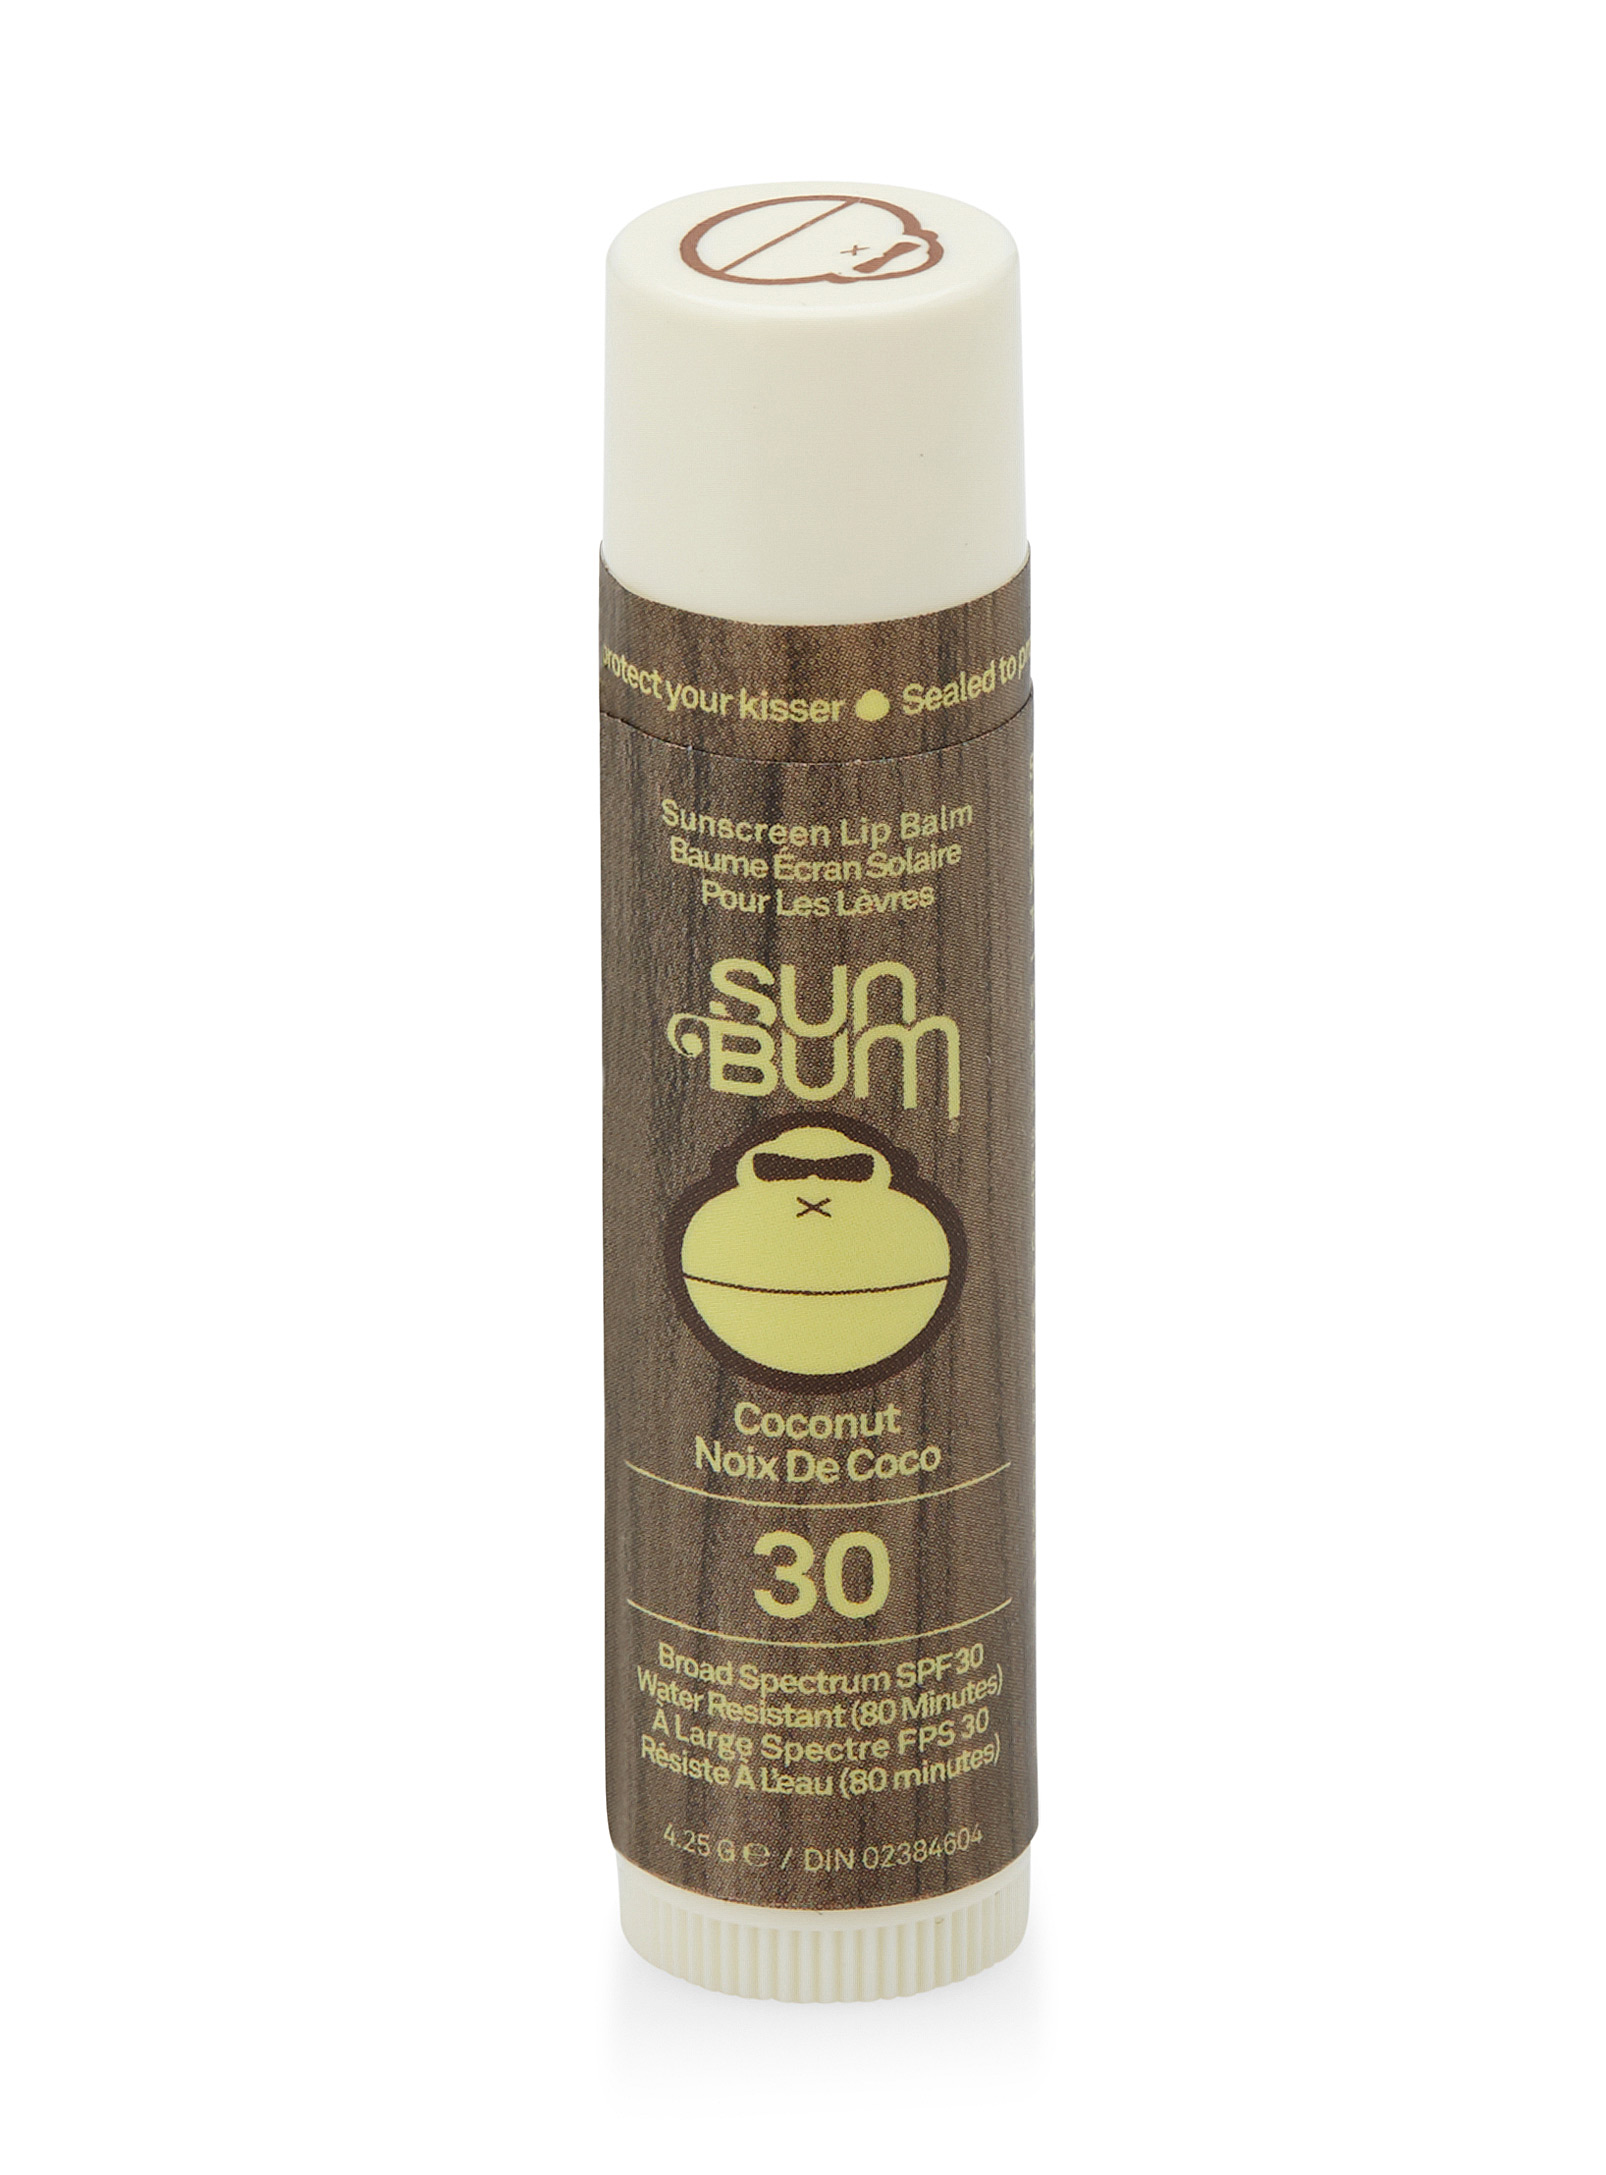 Sun Bum Coconut Spf 30 Sunscreen Lip Balm In Brown